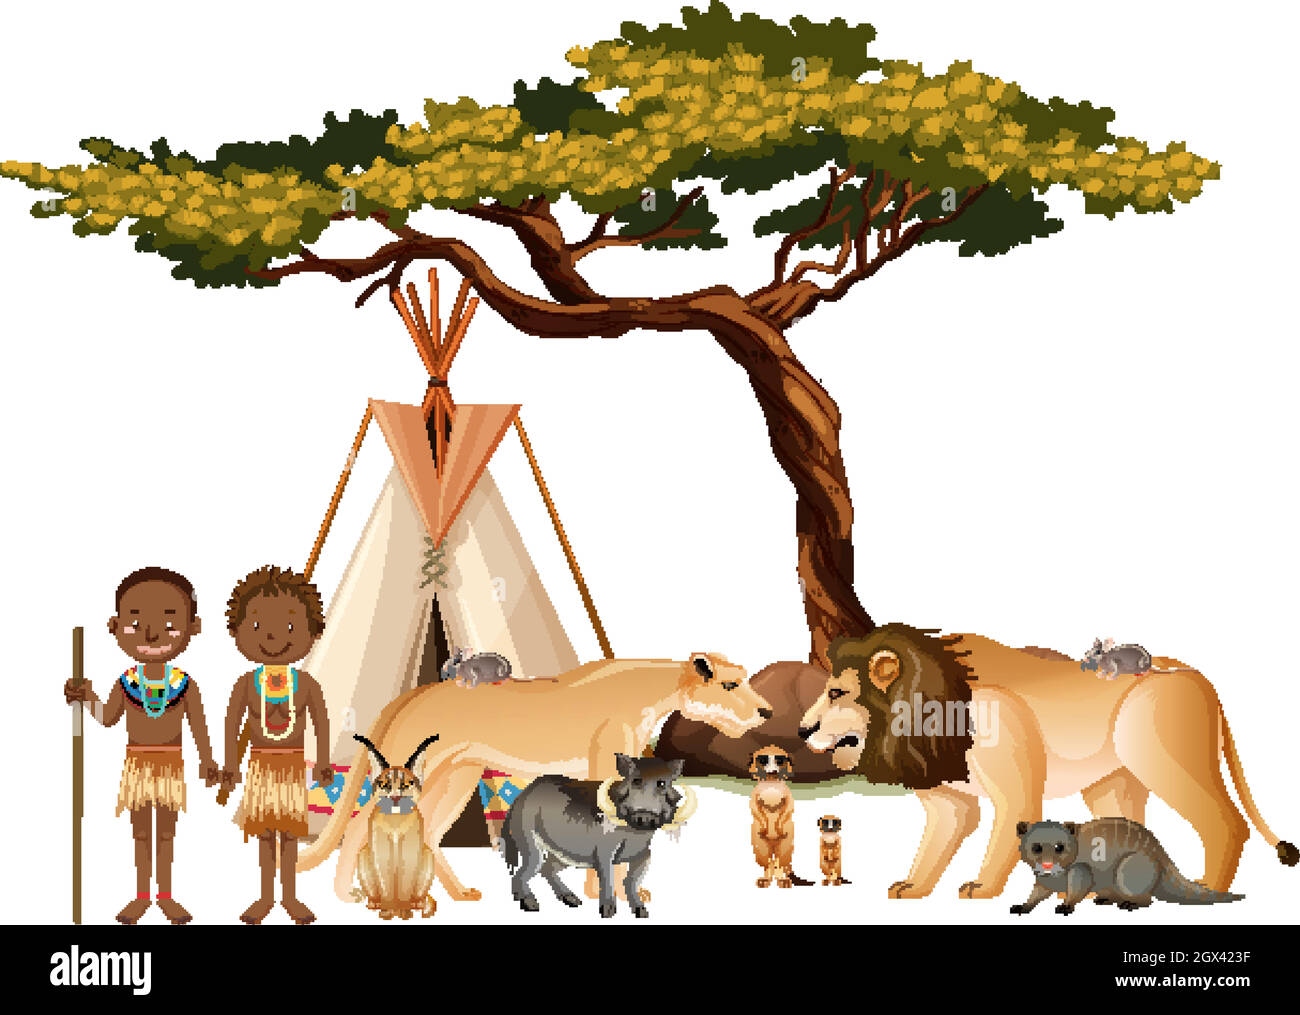 Tribu africaine avec groupe d'animaux sauvages africains sur fond blanc Illustration de Vecteur